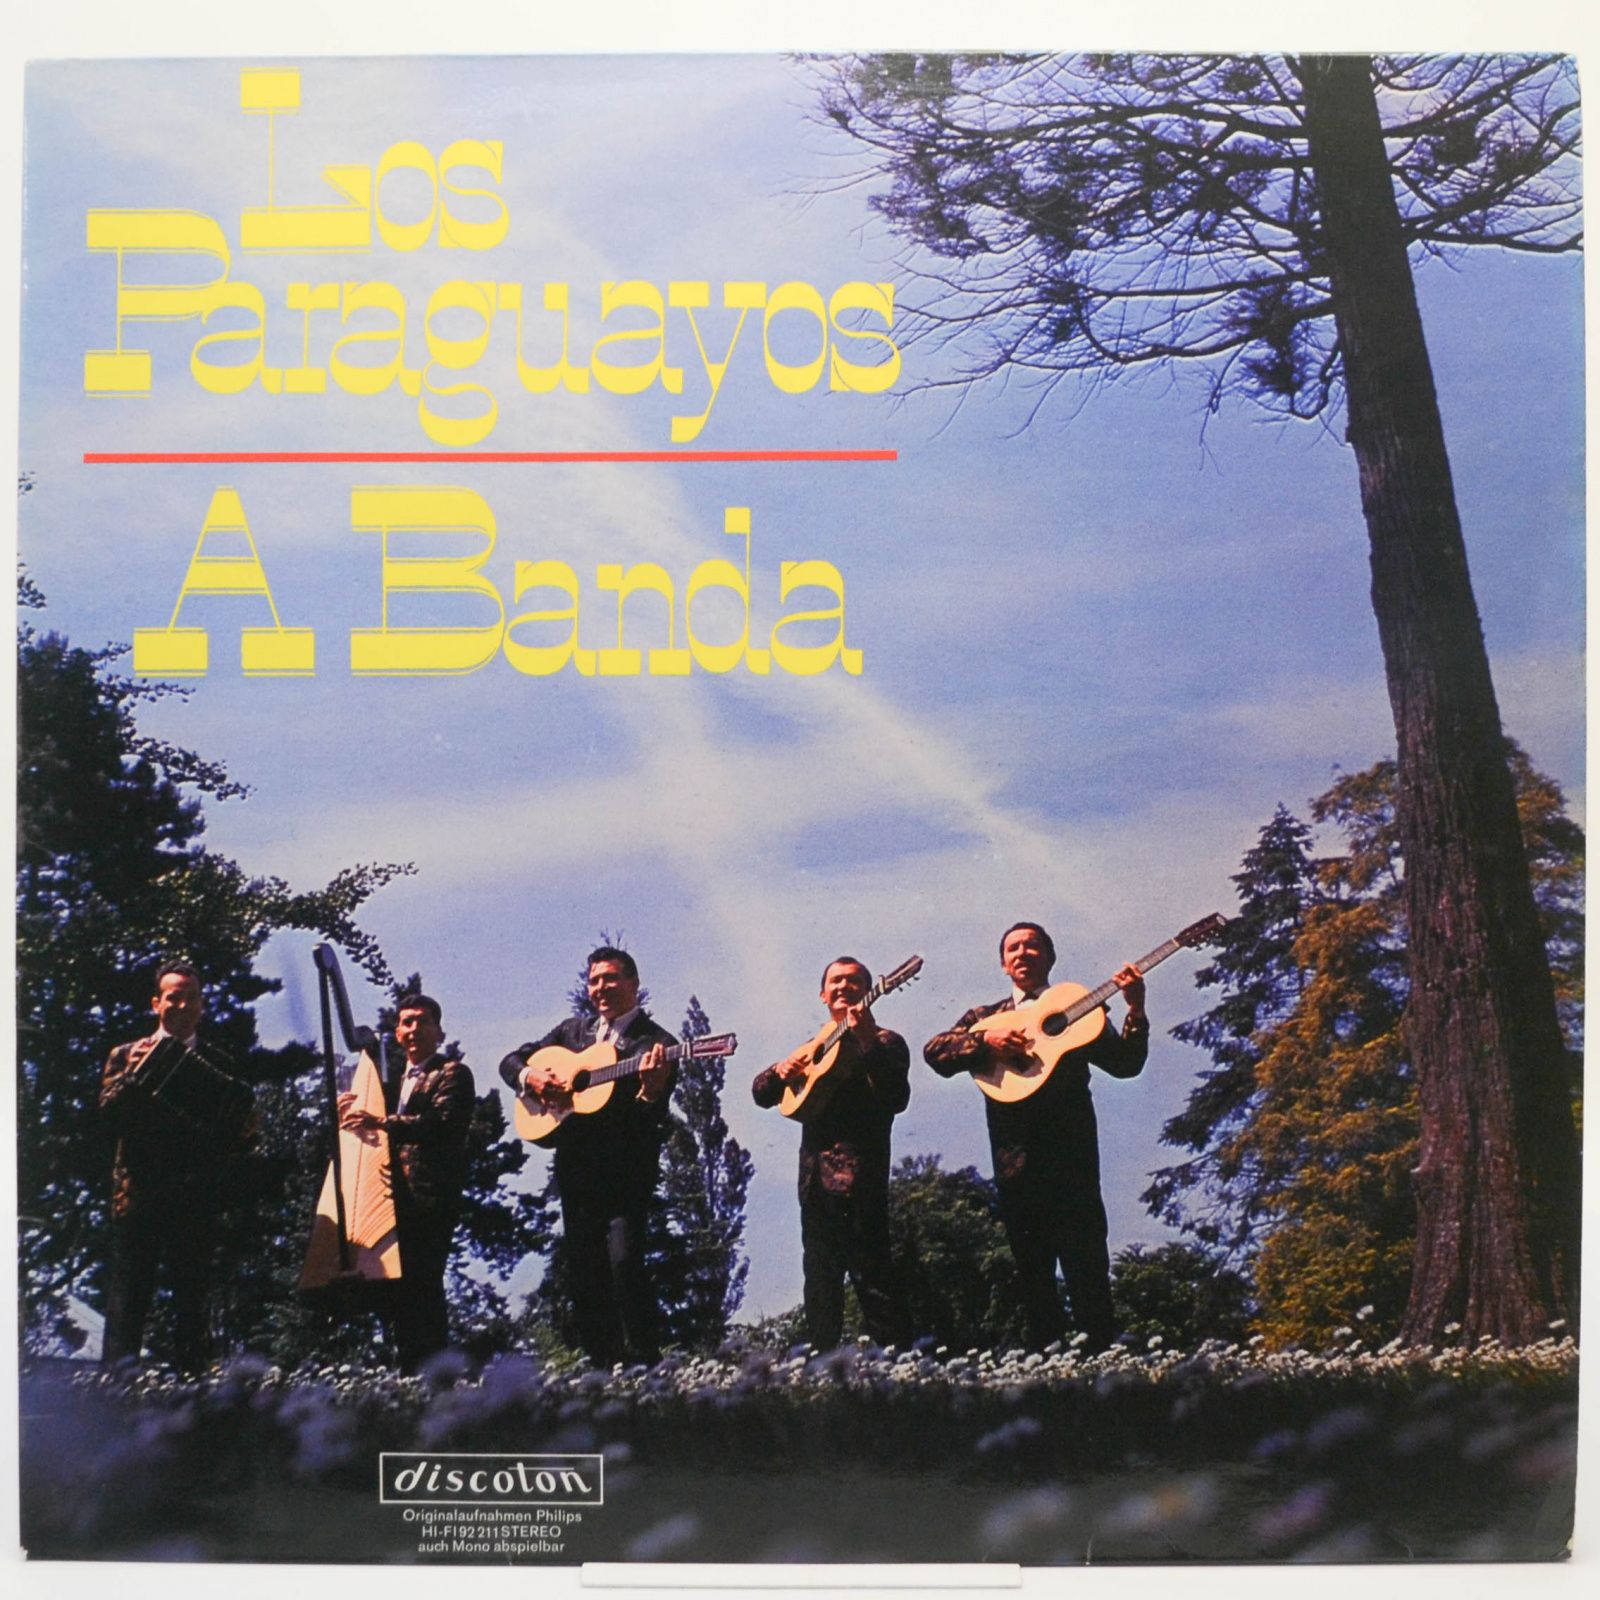 Los Paraguayos — A Banda,